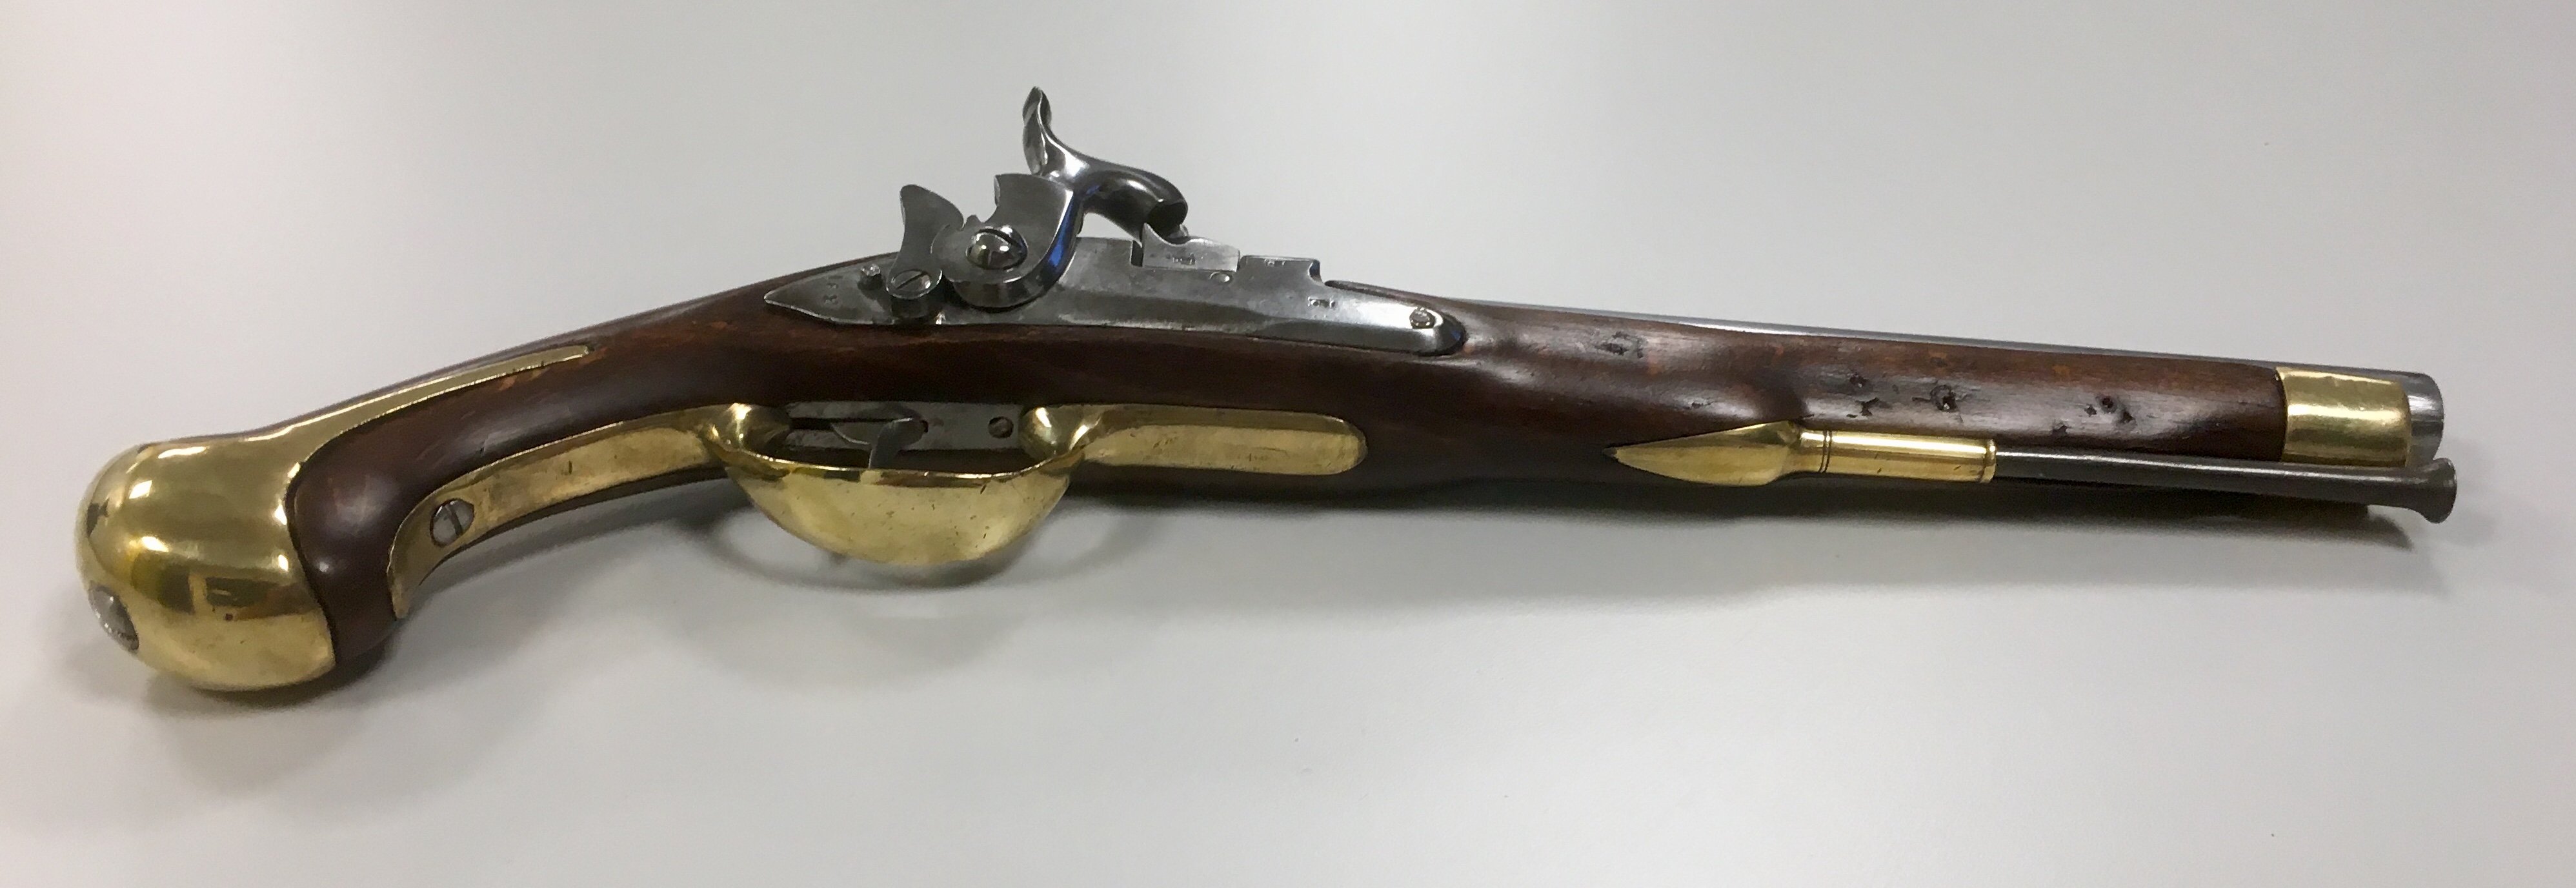 ./guns/pistol/bilder/Pistol-Dansk-Norsk-1772-1839-Marine-162-5.jpg